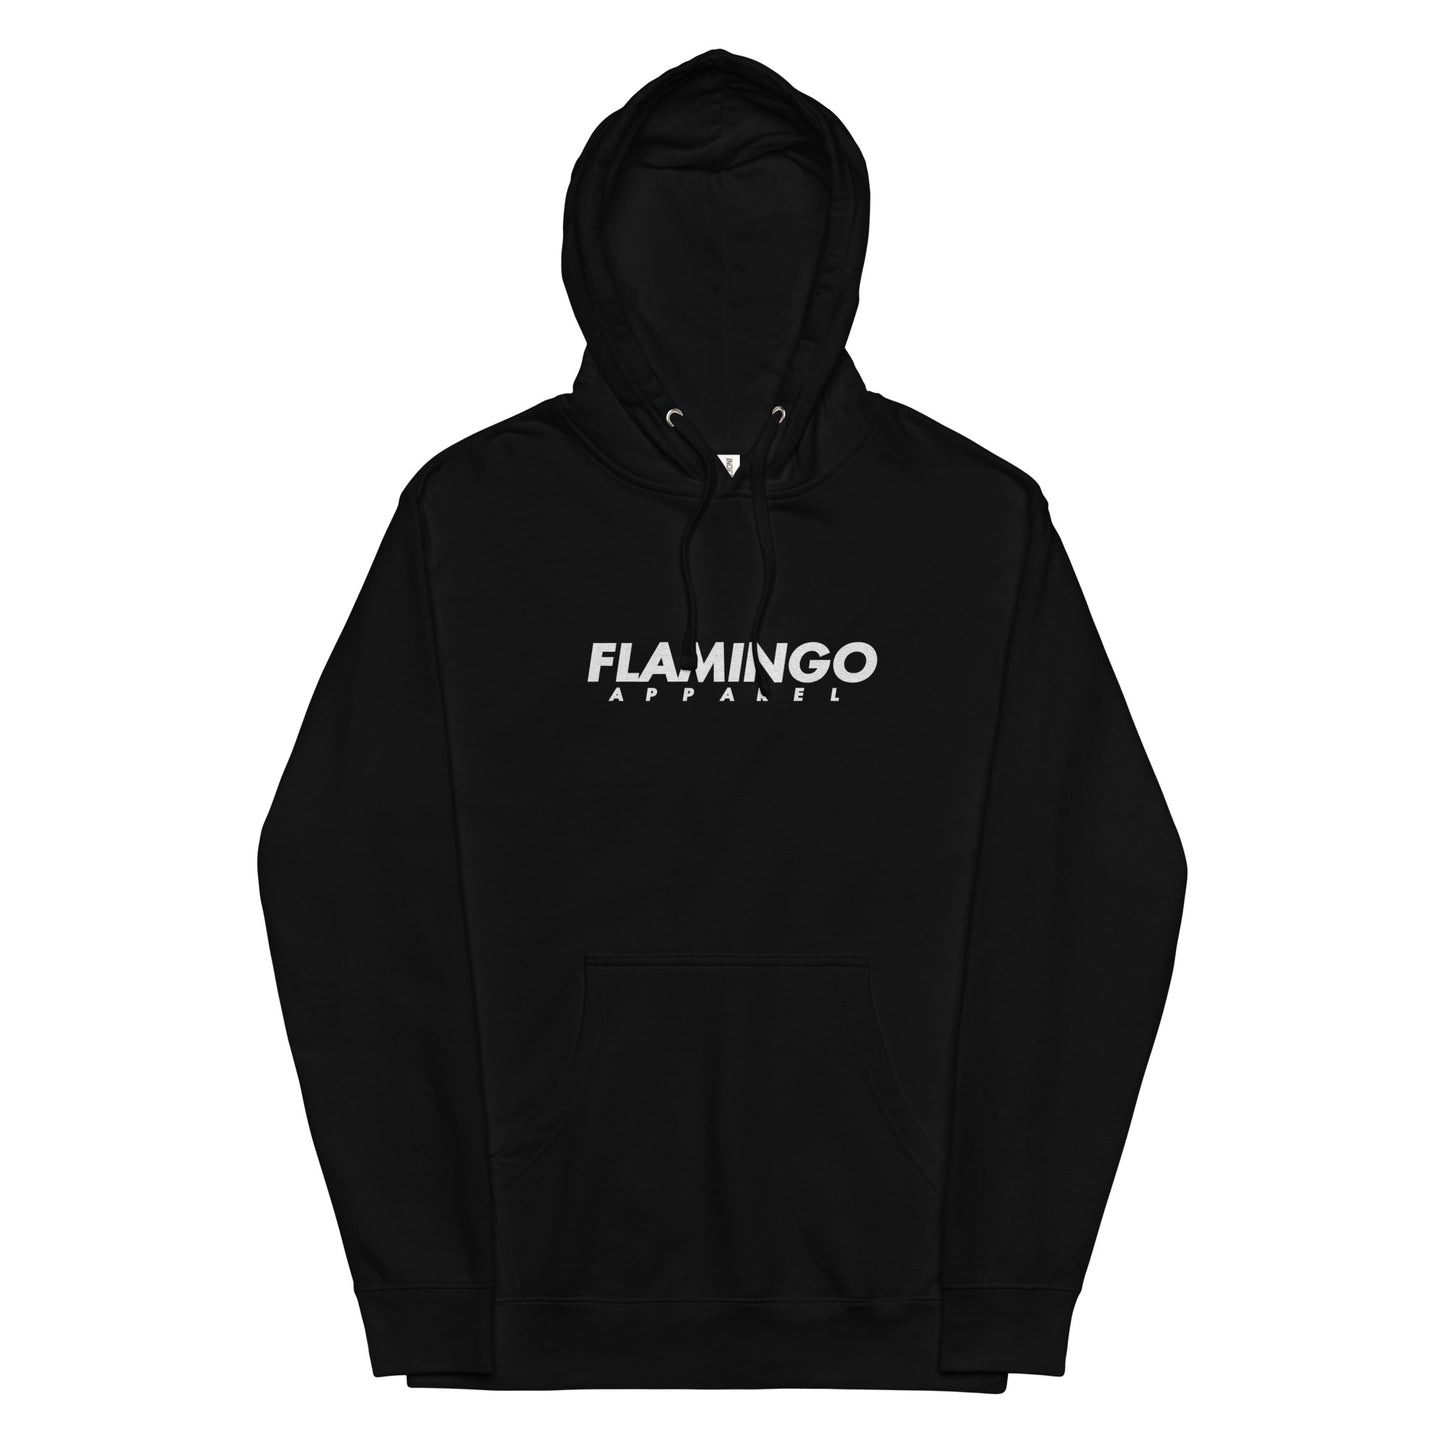 Flamingo Essentials - Unisex midweight hoodie